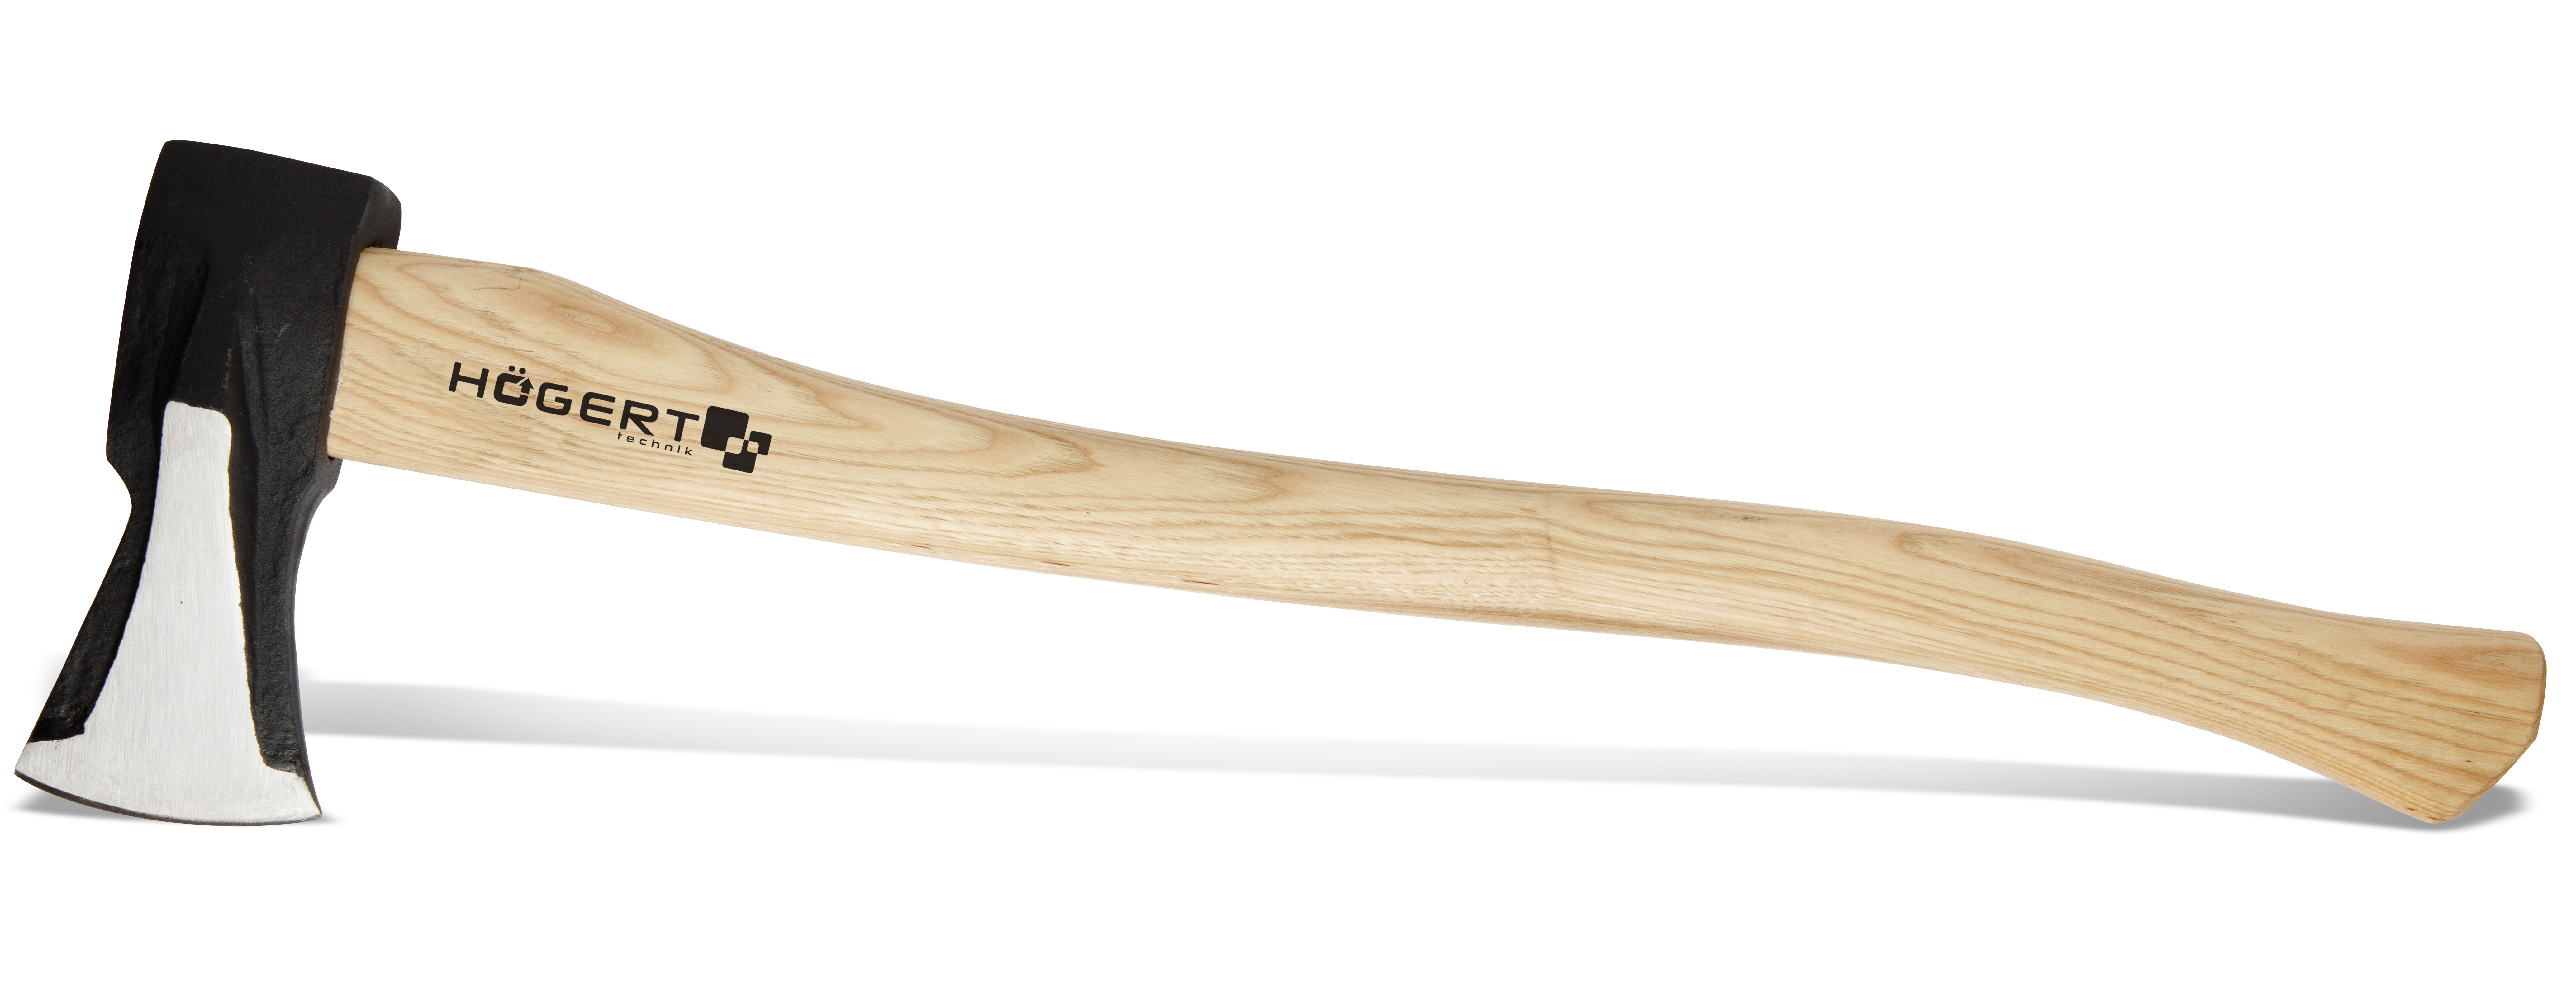 Топор- колун 2000 г с деревянной рукояткой